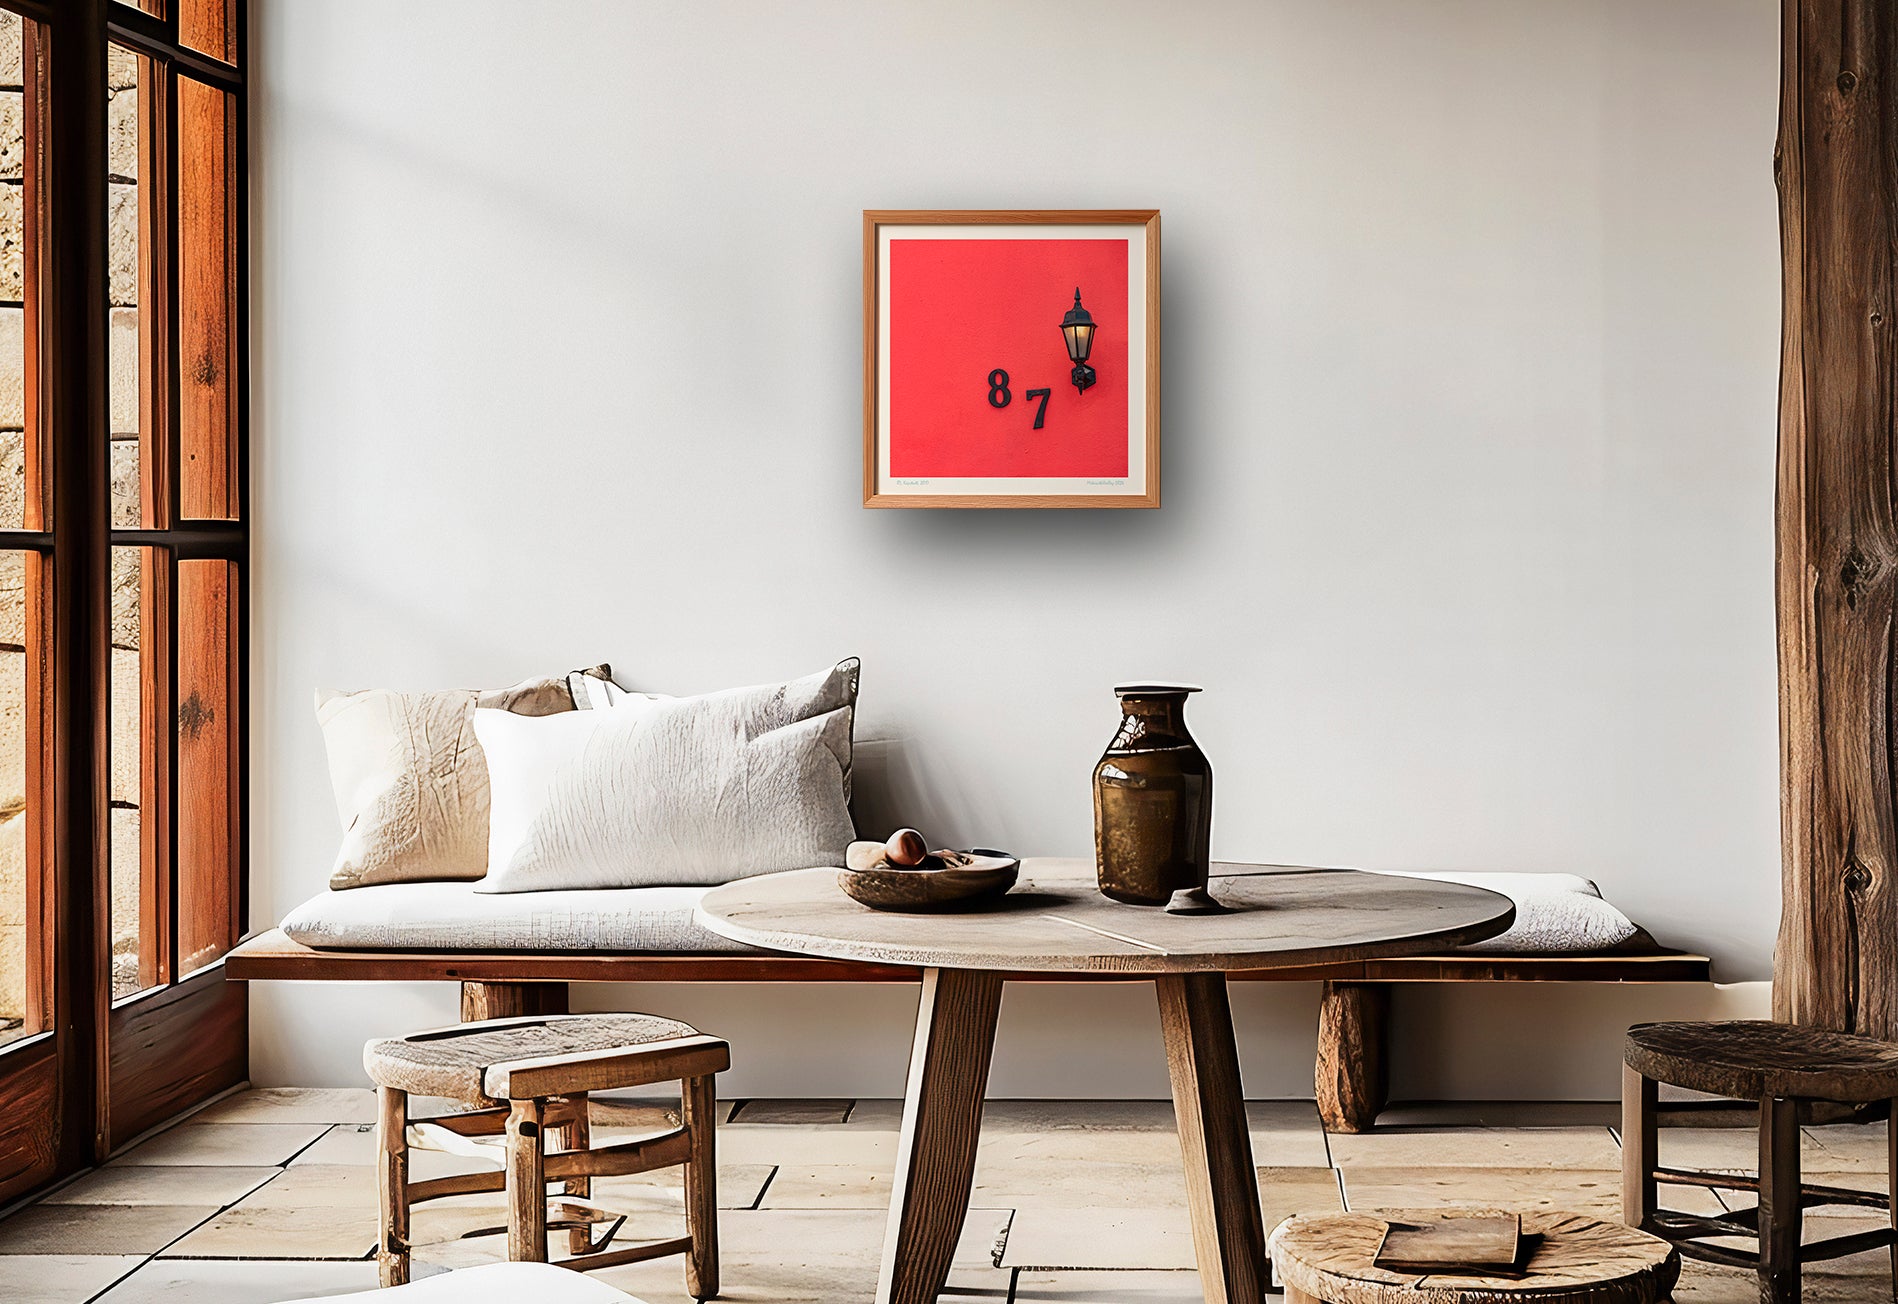 Kunstdruck "87" aus der Serie Südafrika an der Wand eines rustikalen Wohnzimmers